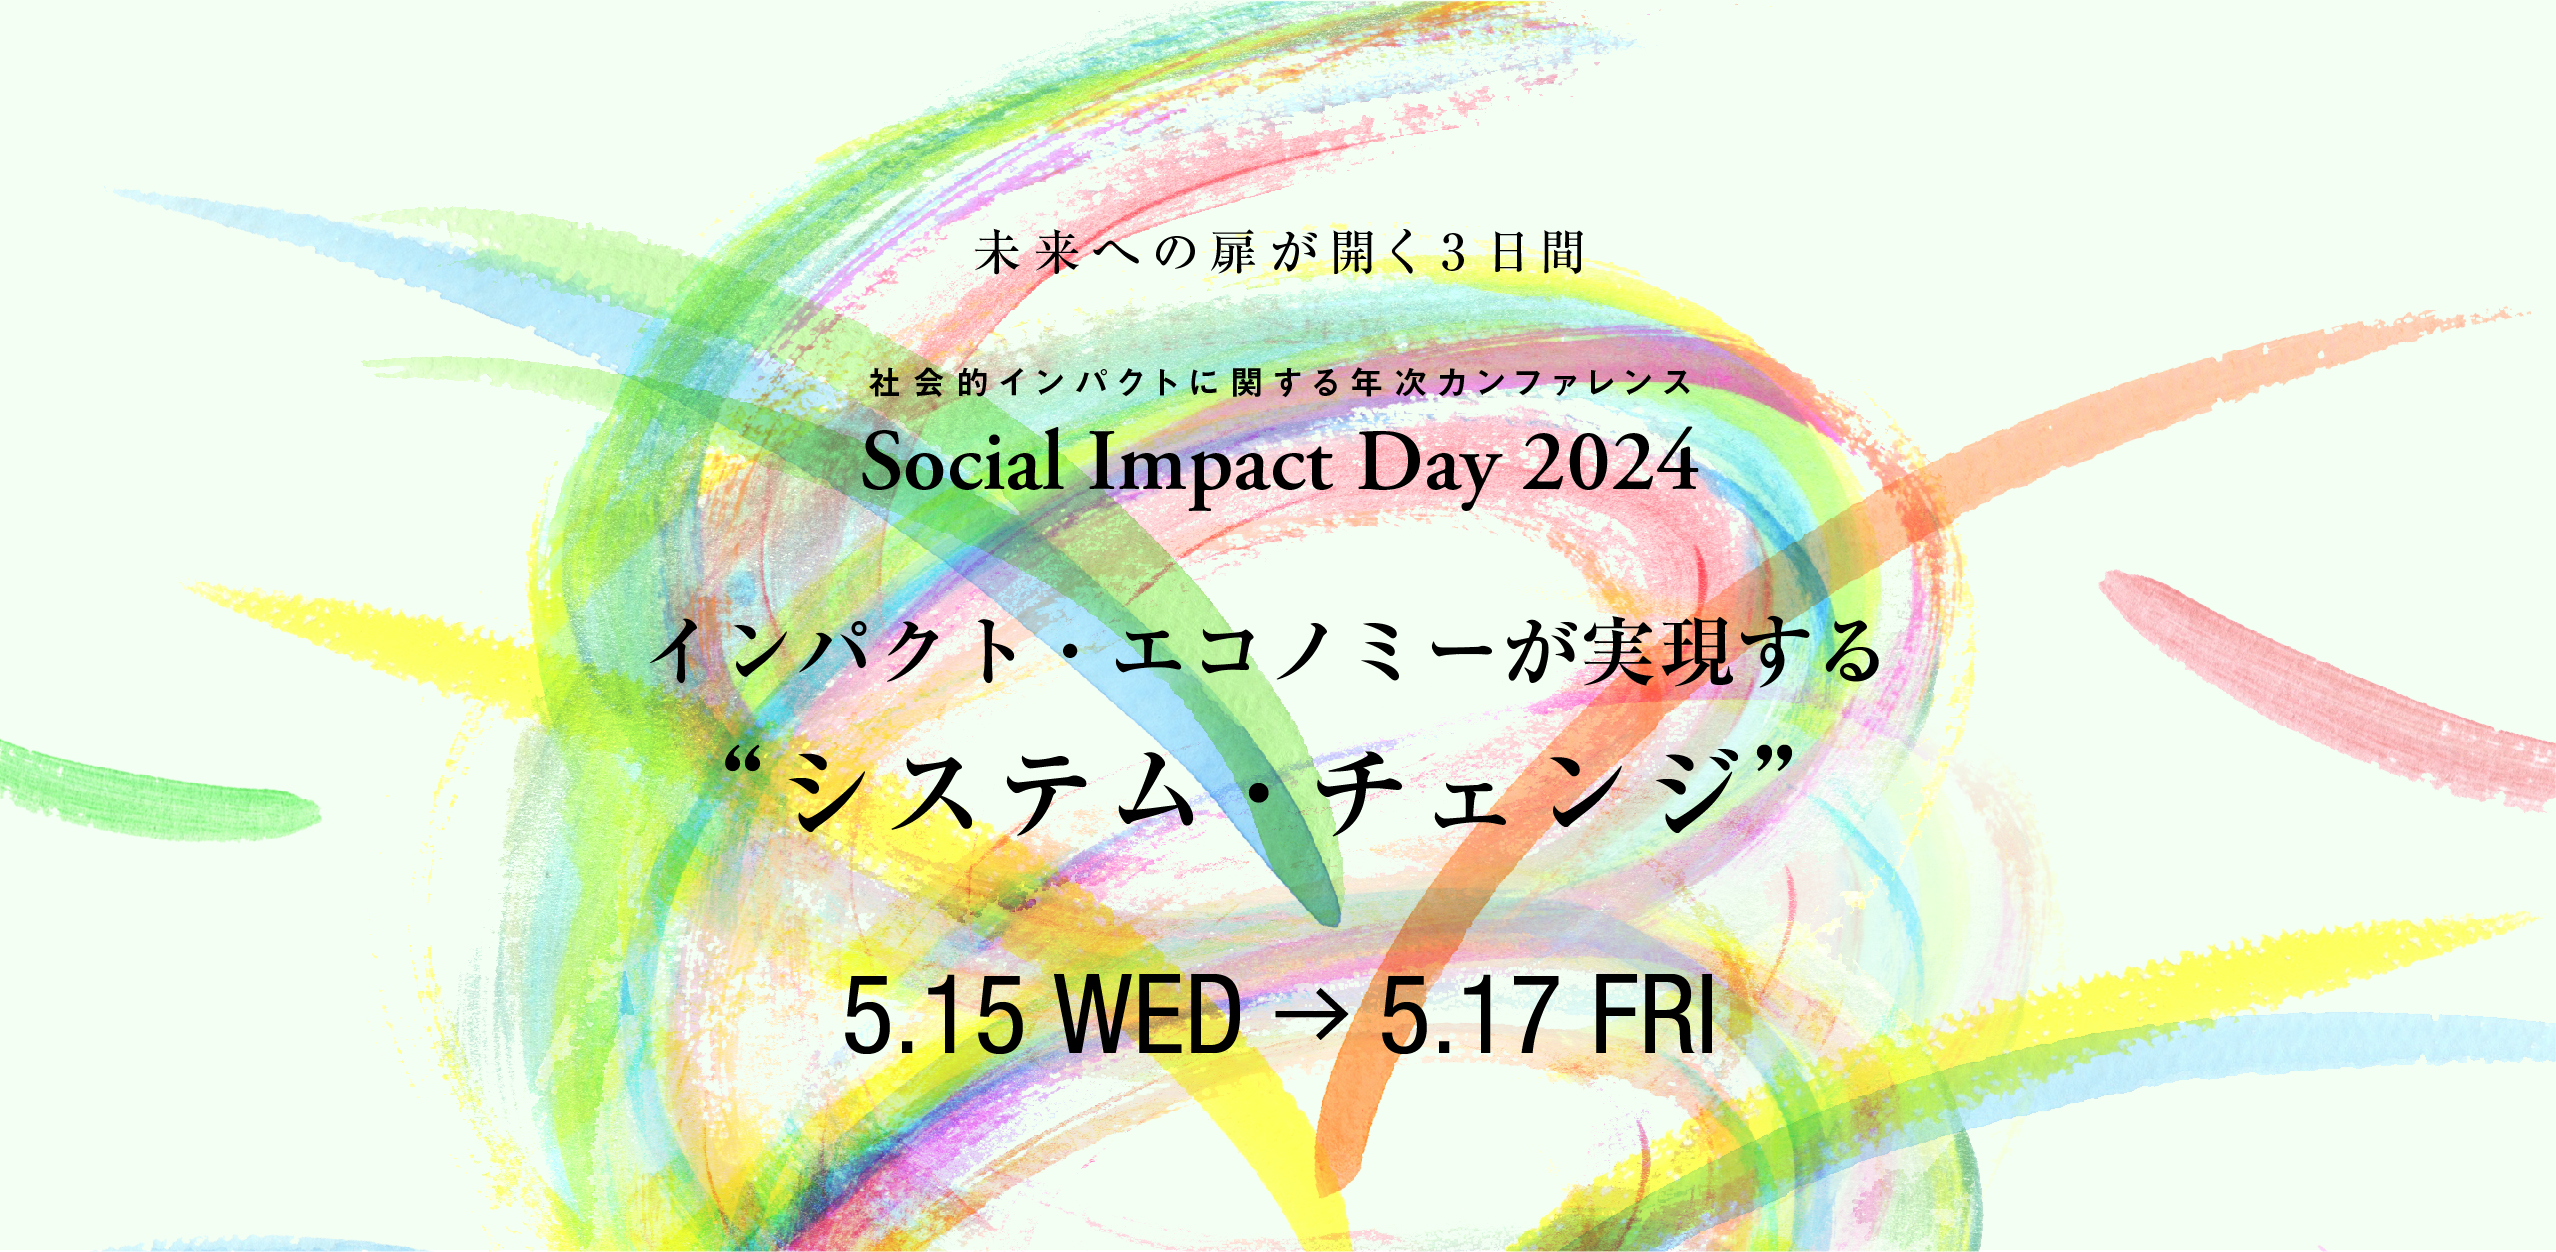 【4/30まで】Social Impact Day 2024  早割チケットの追加販売を開始しました!